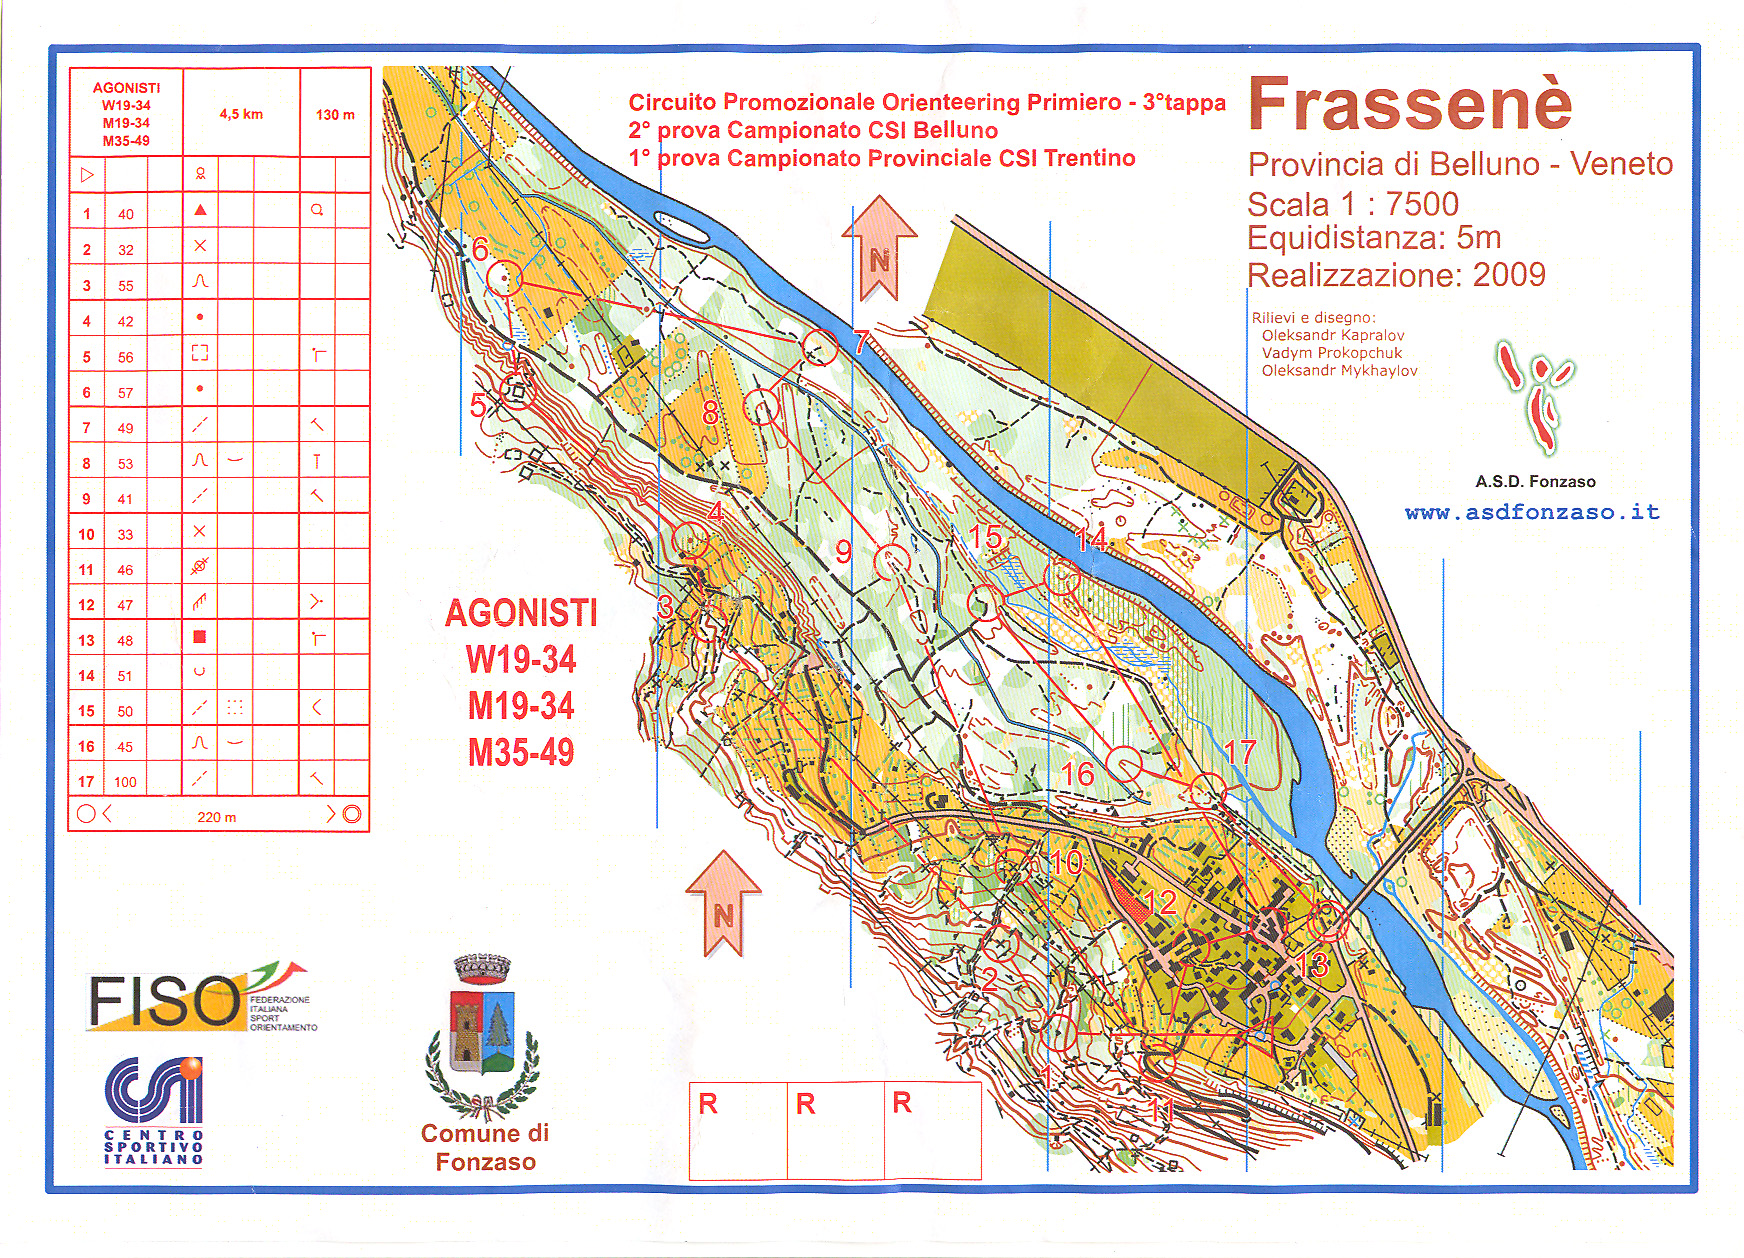 1^ prova Campionato Provinciale CSI Trentino 2015 (22-03-2015)